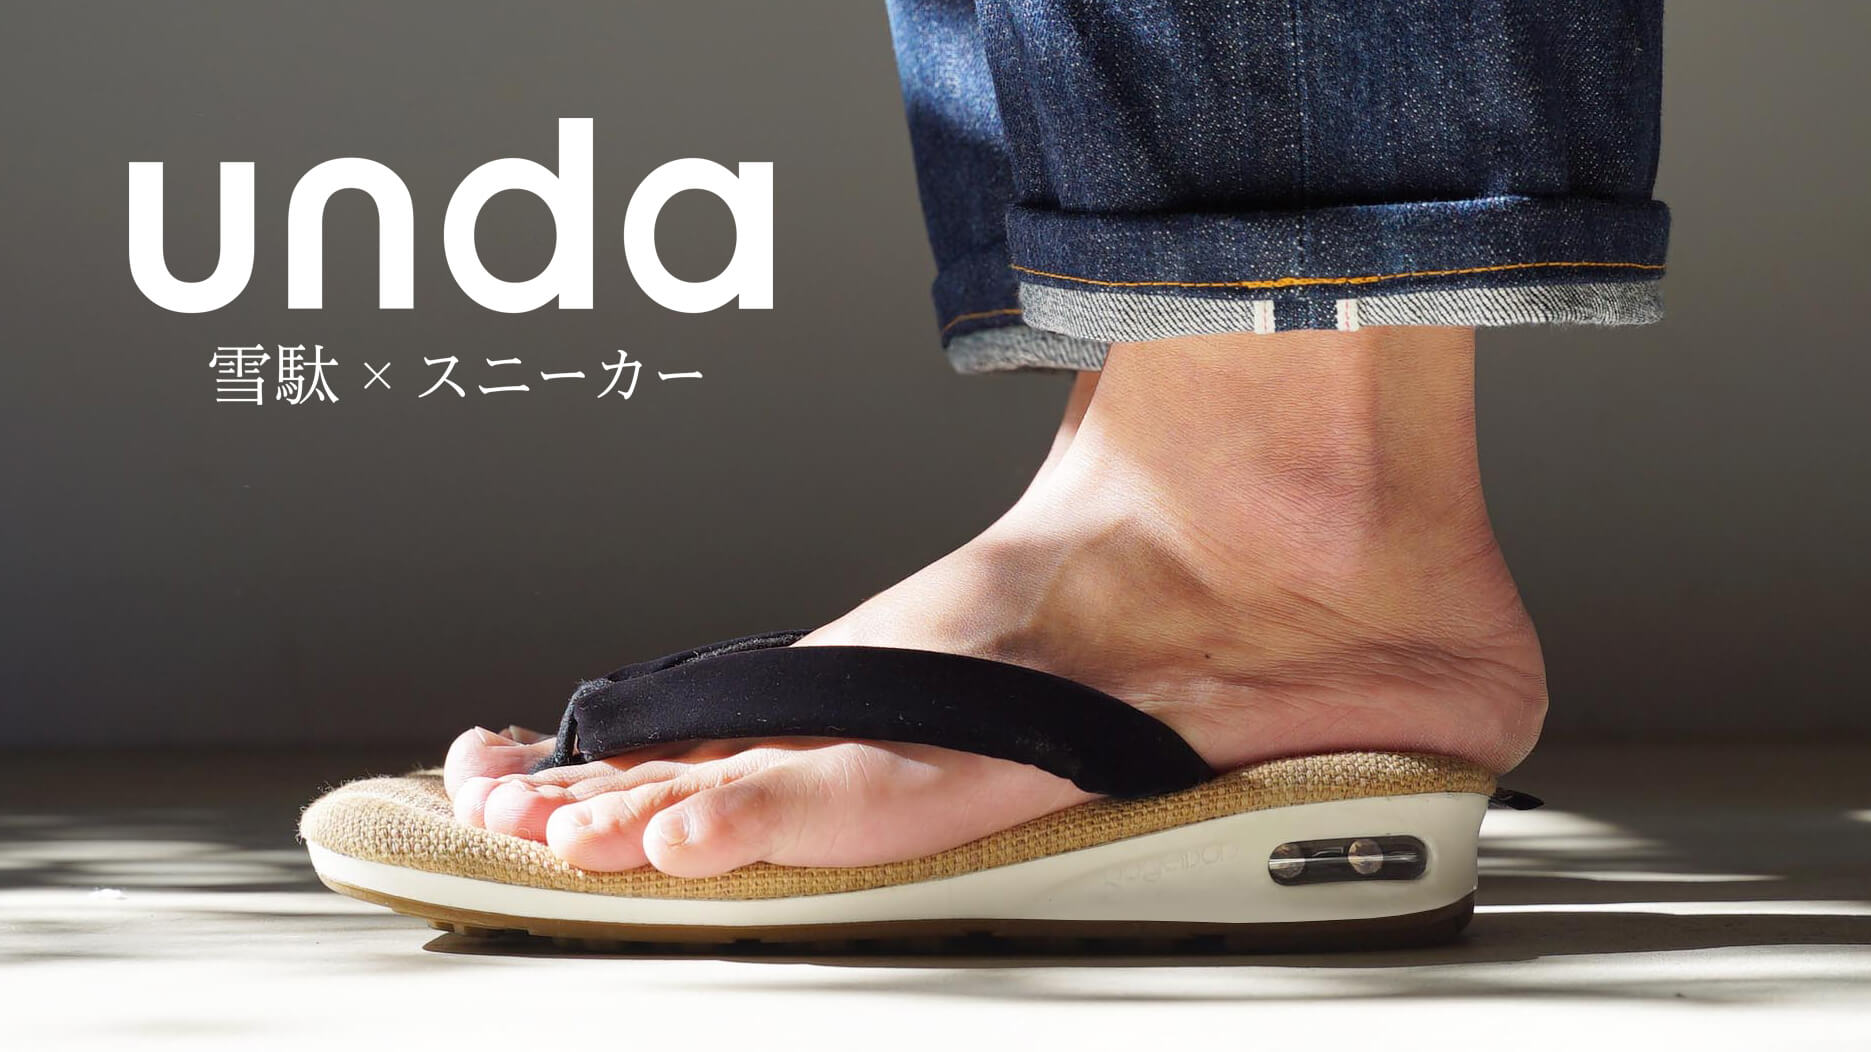 雪駄與運動鞋融合設計的「unda -雲駄-」將於goyemon販售| MOSHI MOSHI